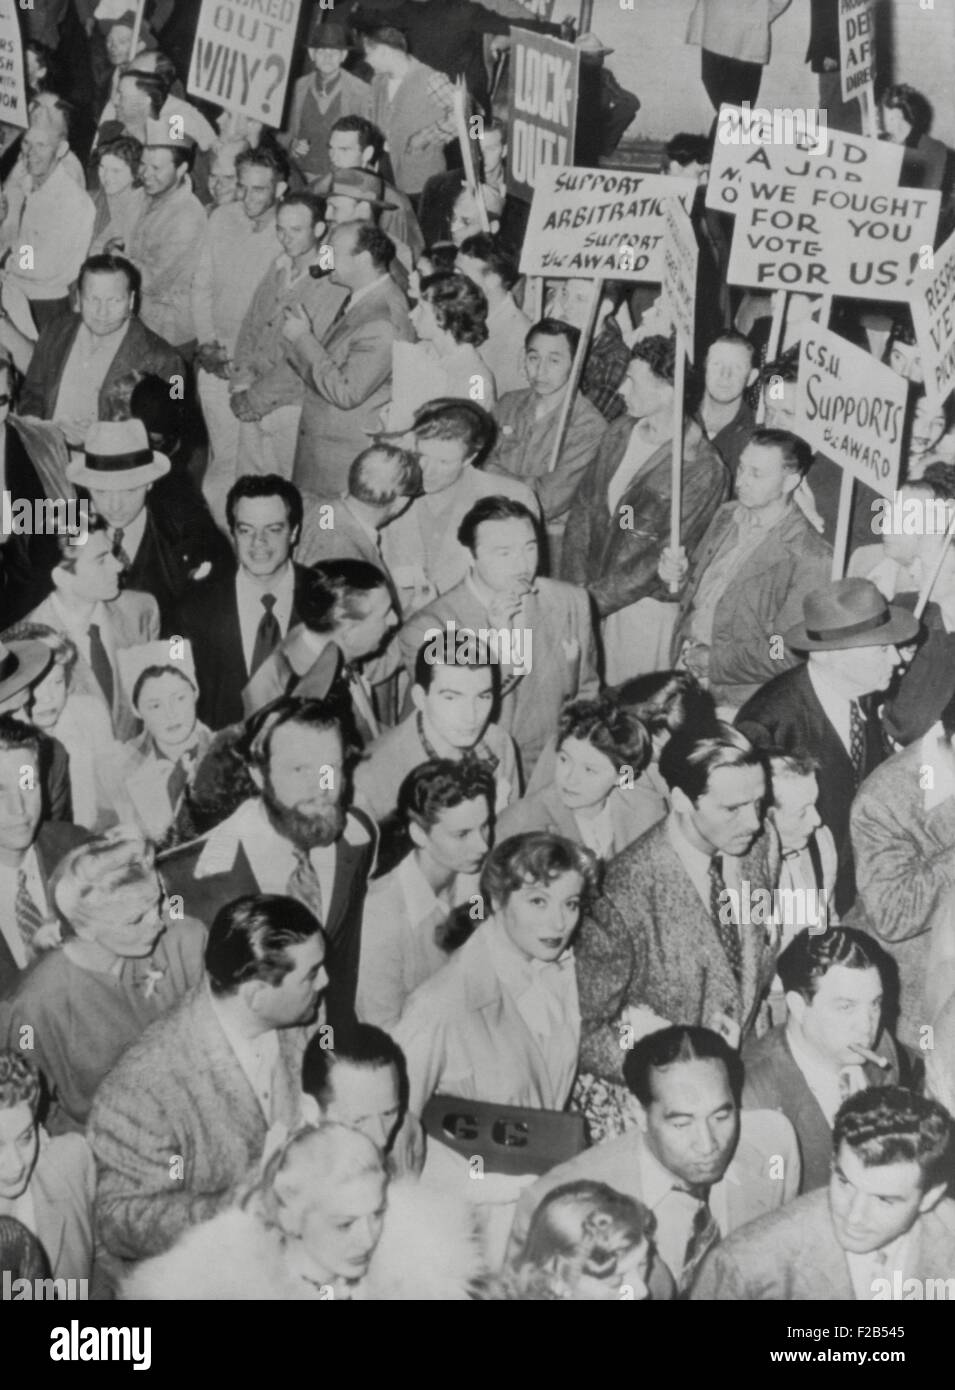 L'attrice Greer Garson unisce i riscontri della Conferenza di studio i sindacati a Hollywood. Luglio 10, 1946. CSU scioperi erano guidati da Herb Sorrell, che stava cercando di stabilire un filmato lavoratore federazione. Meno radicale dei sindacati e l'anti-politica comunista sconfitto lo sciopero e infine l'Unione. - (BSLOC 2014 17 89) Foto Stock